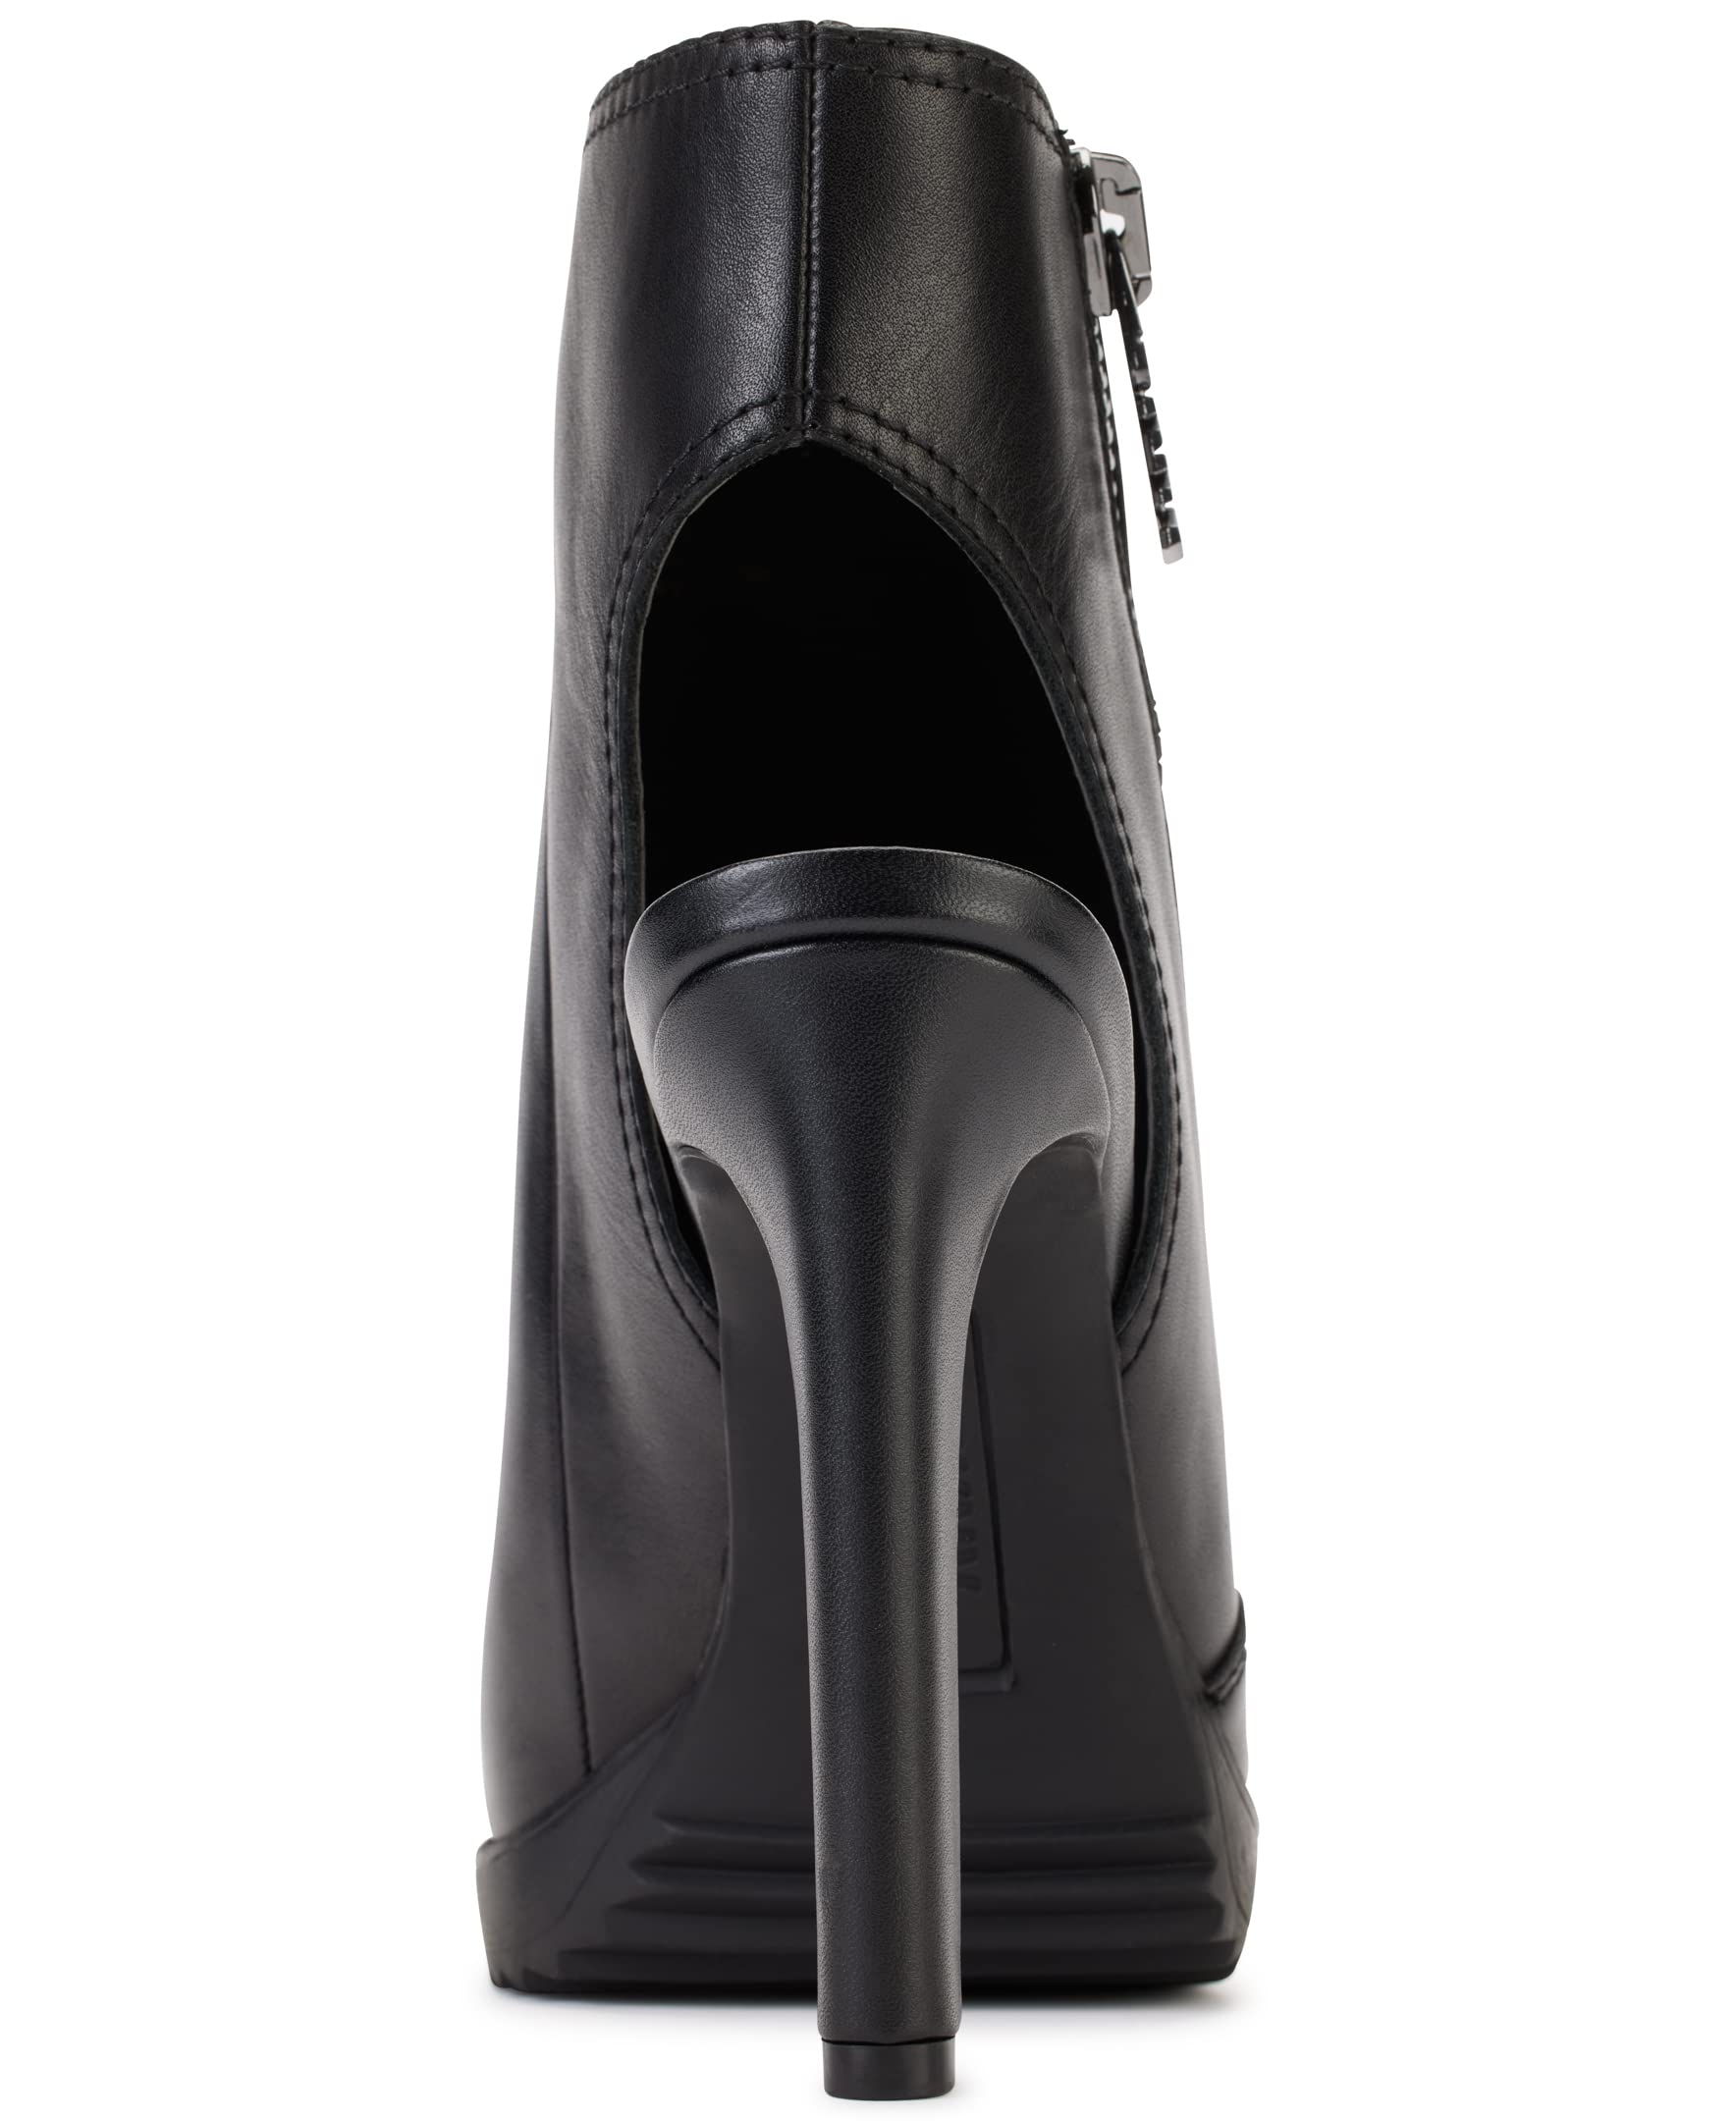 DKNY Women's Open Toe Rubber Sole Heeled Sandal Bootie Fashion Boot